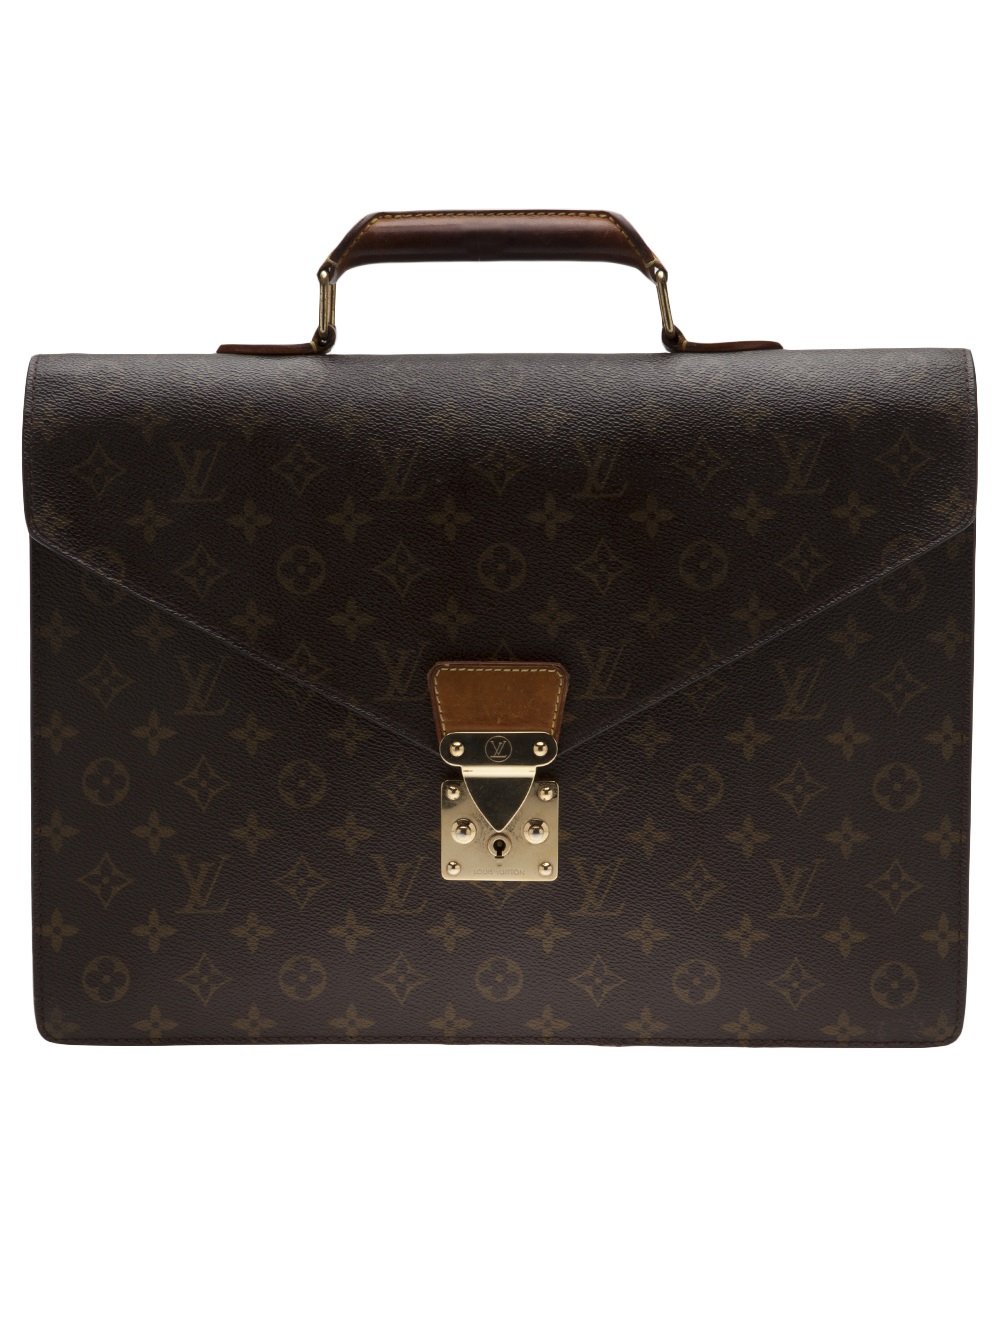 Louis Vuitton Monogram Serviette Briefcase in Brown